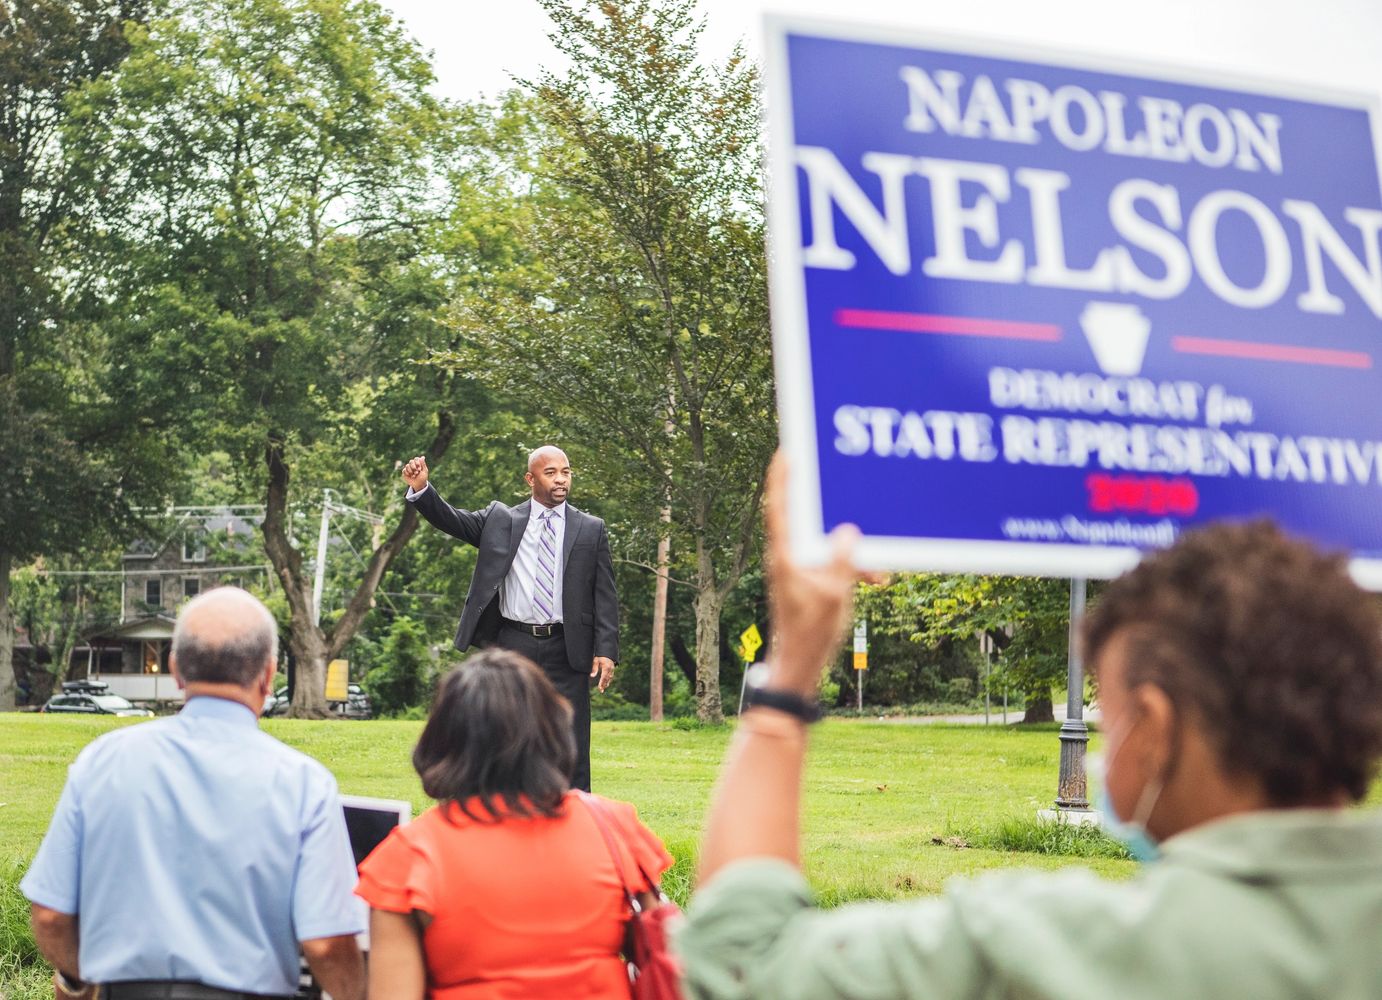 Napoleon Nelson for State Representative, 154th District, Pennsylvania